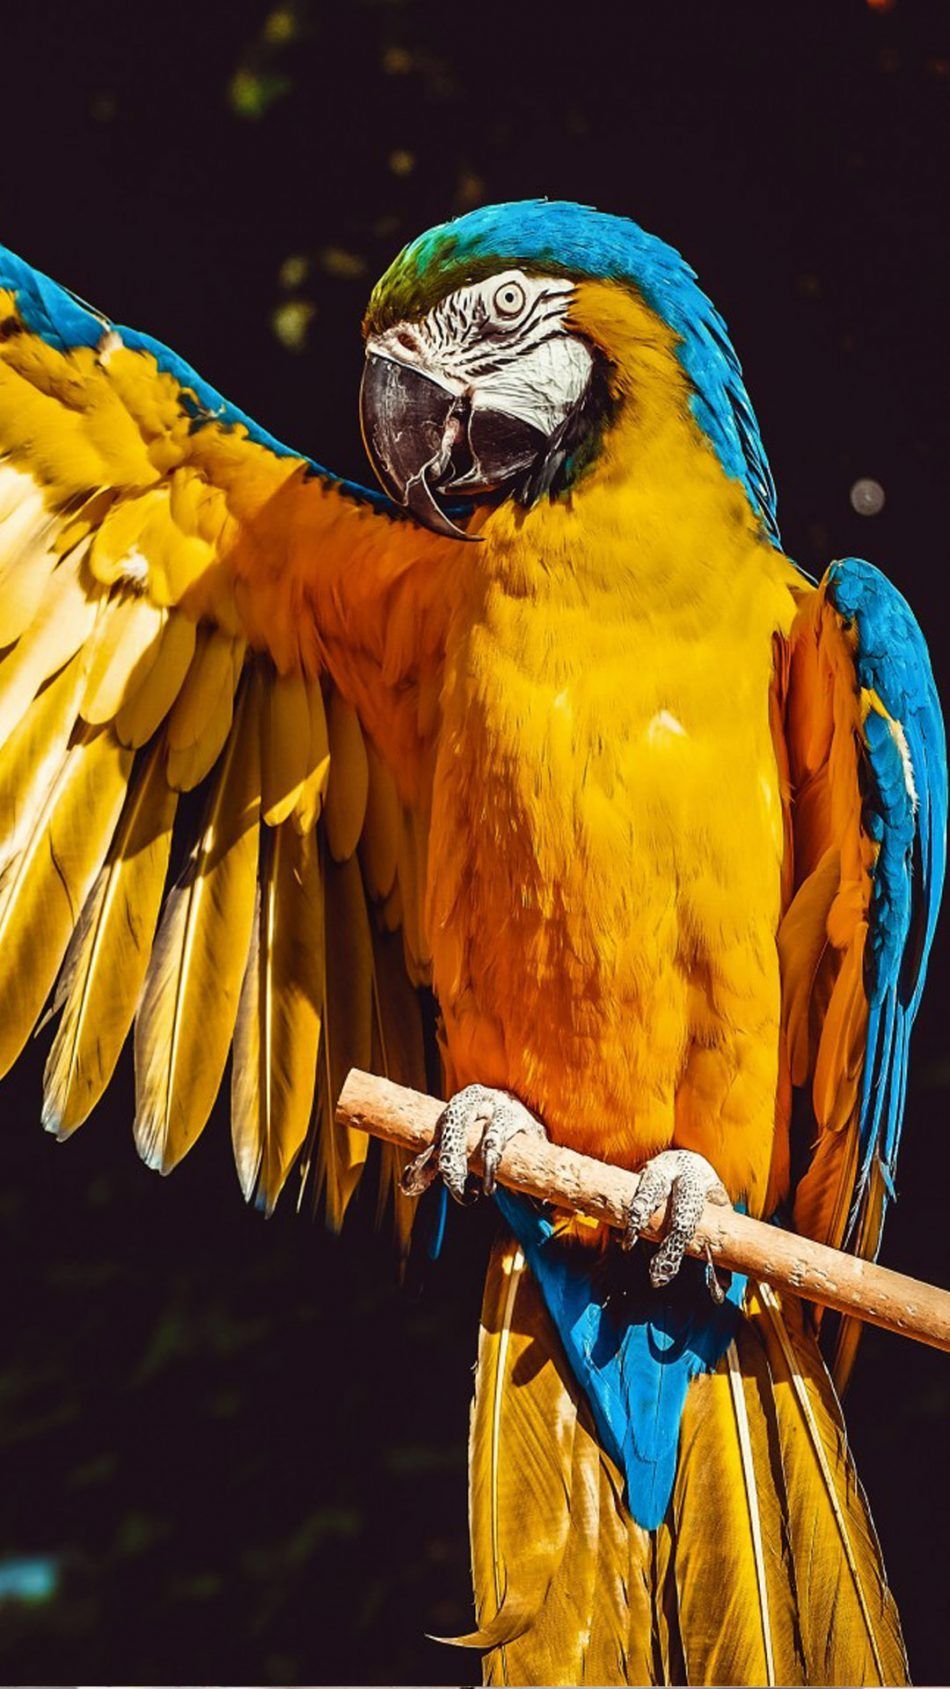 Macaw Parrot Bird. Parrot bird, Macaw parrot, Parrot pet